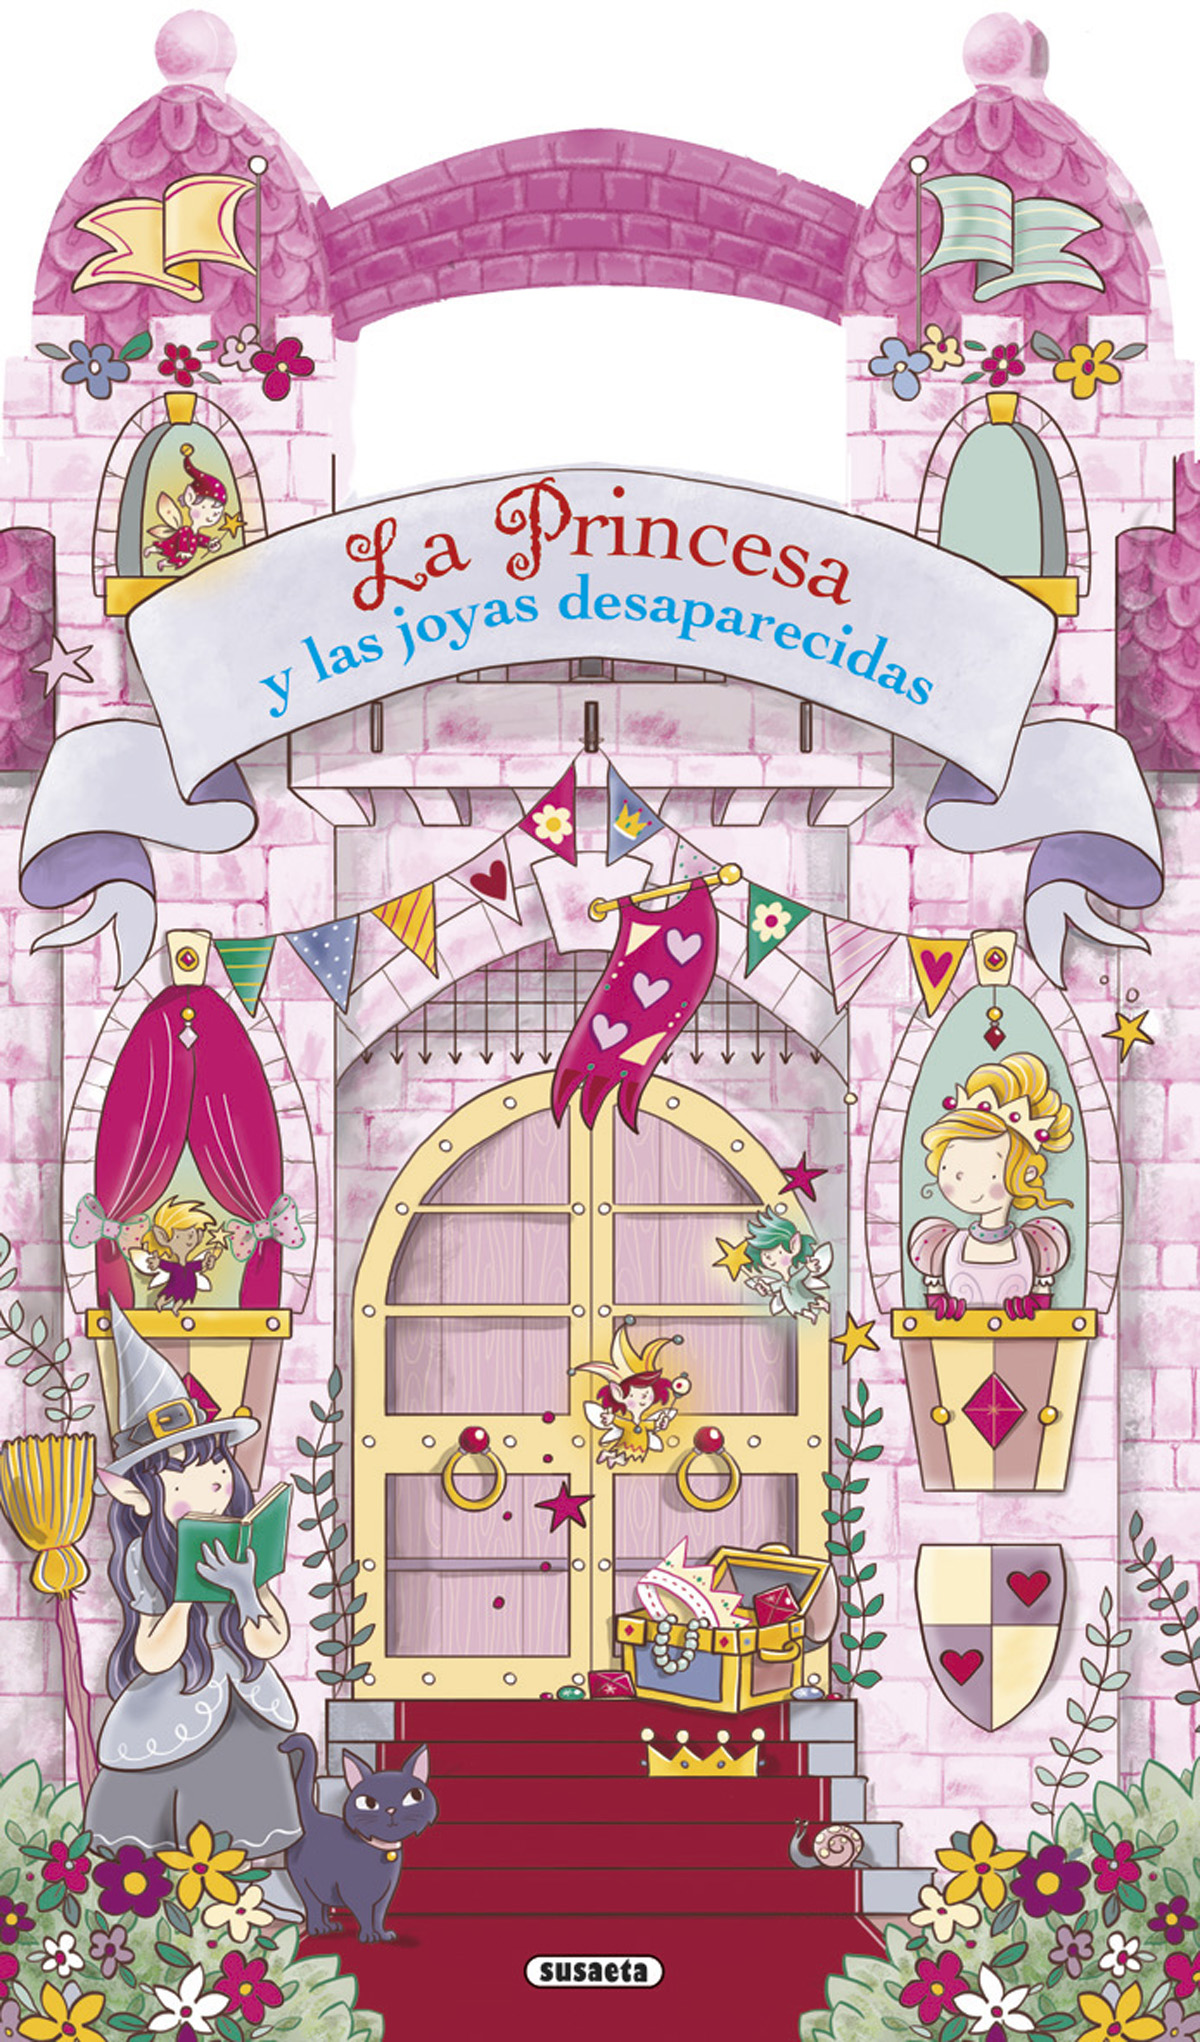 La princesa y las joyas desaparecidas